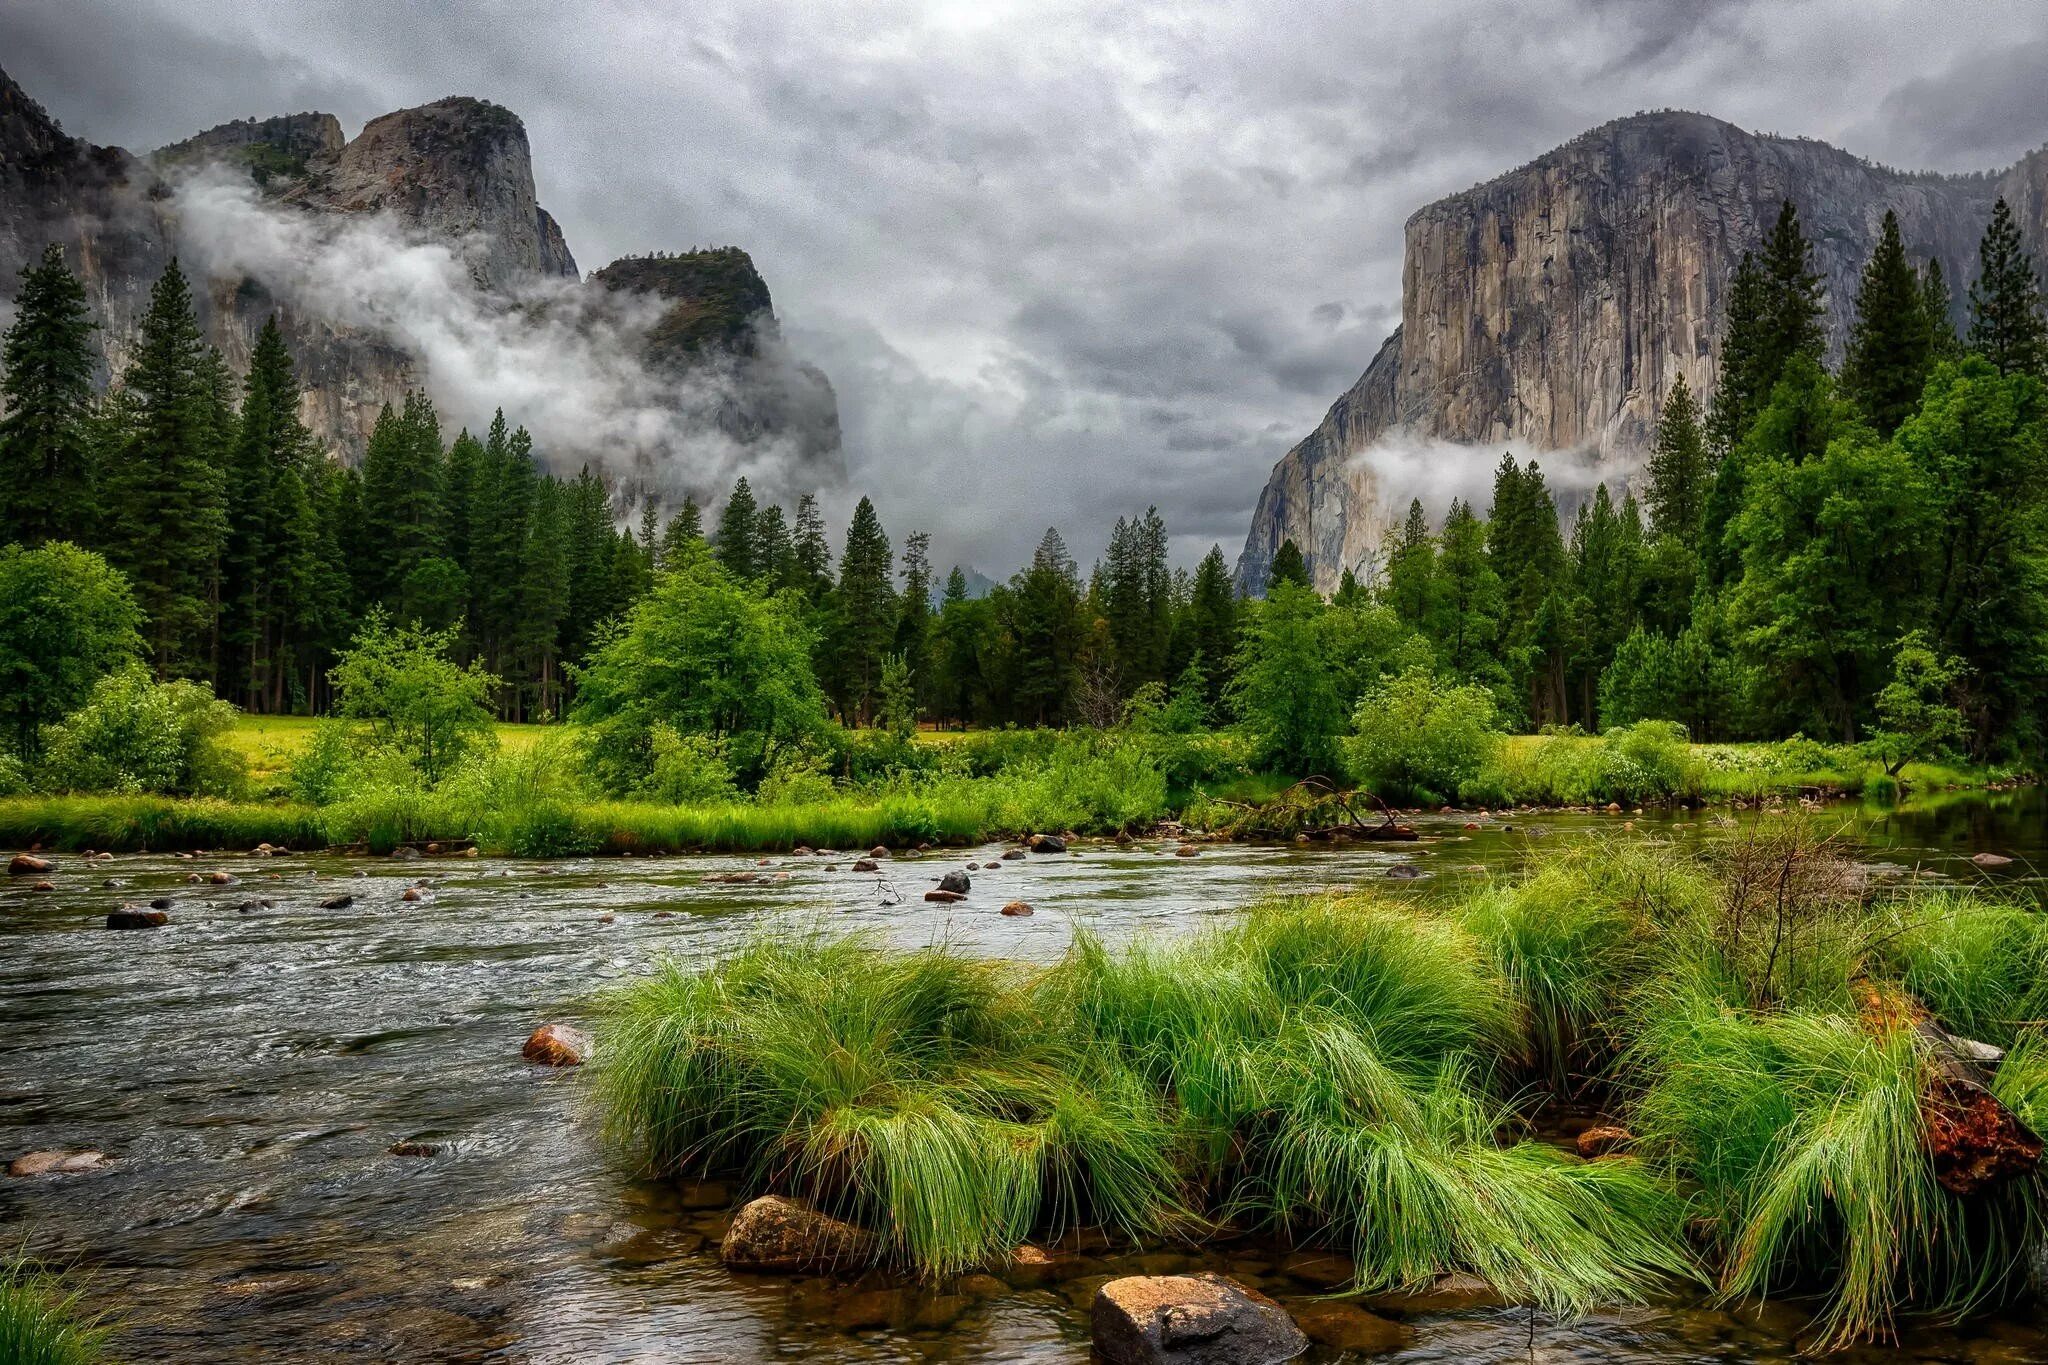 Река Мерсед, Йосемити, США.. Река, горы, лес, River, Mountains, Forest. Лес Йосемити. Красивый пейзаж. Природа этого региона удивляет